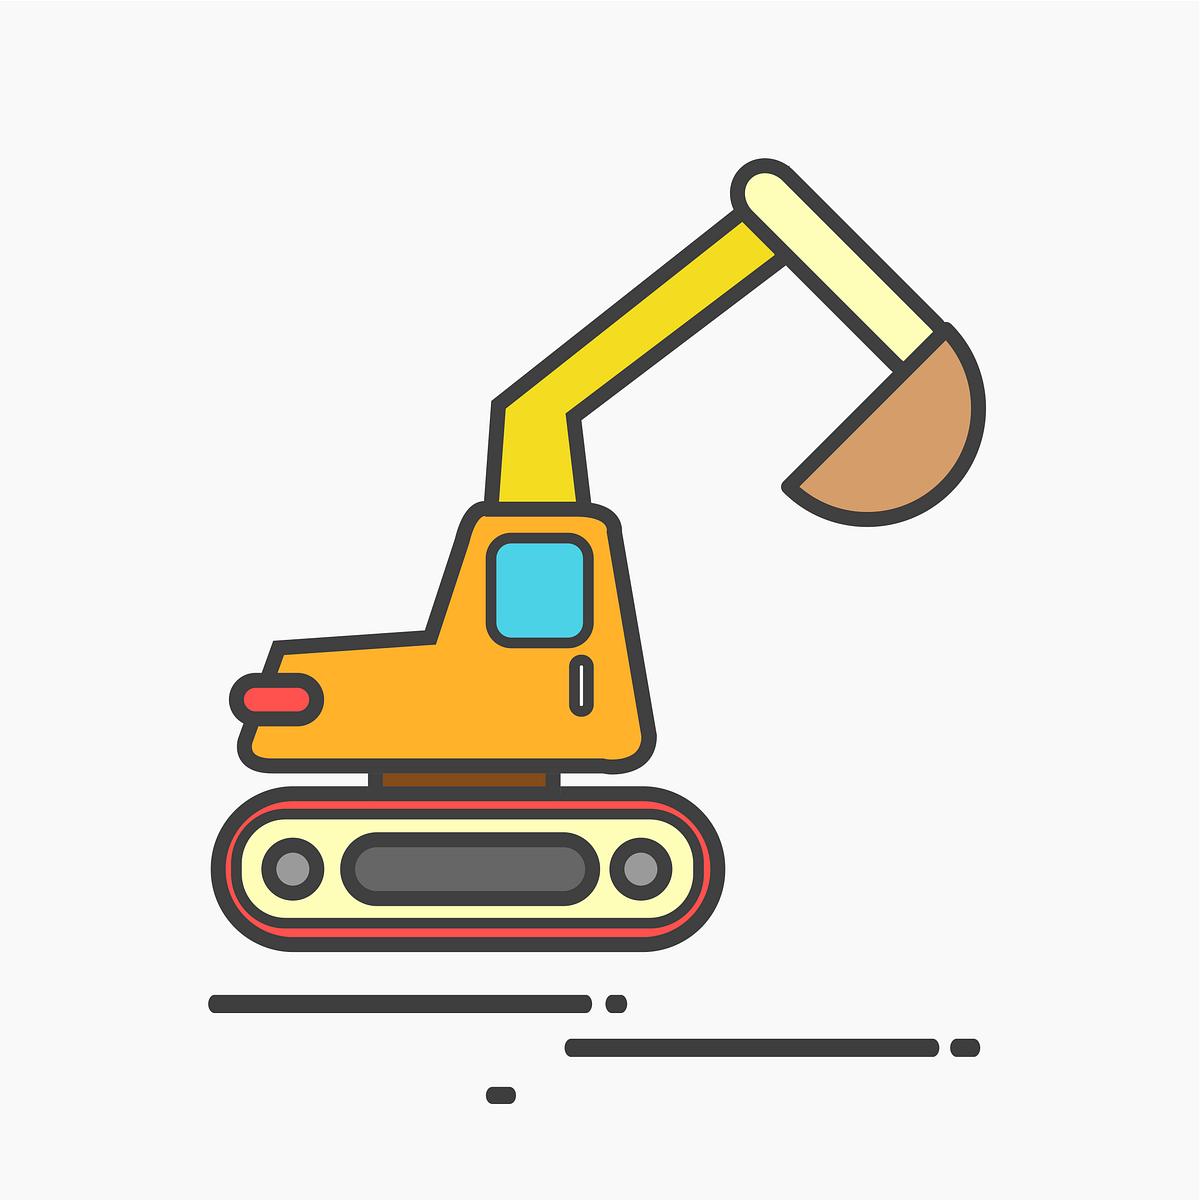 Download Excavator Images Free Vectors Pngs Mockups Backgrounds Rawpixel